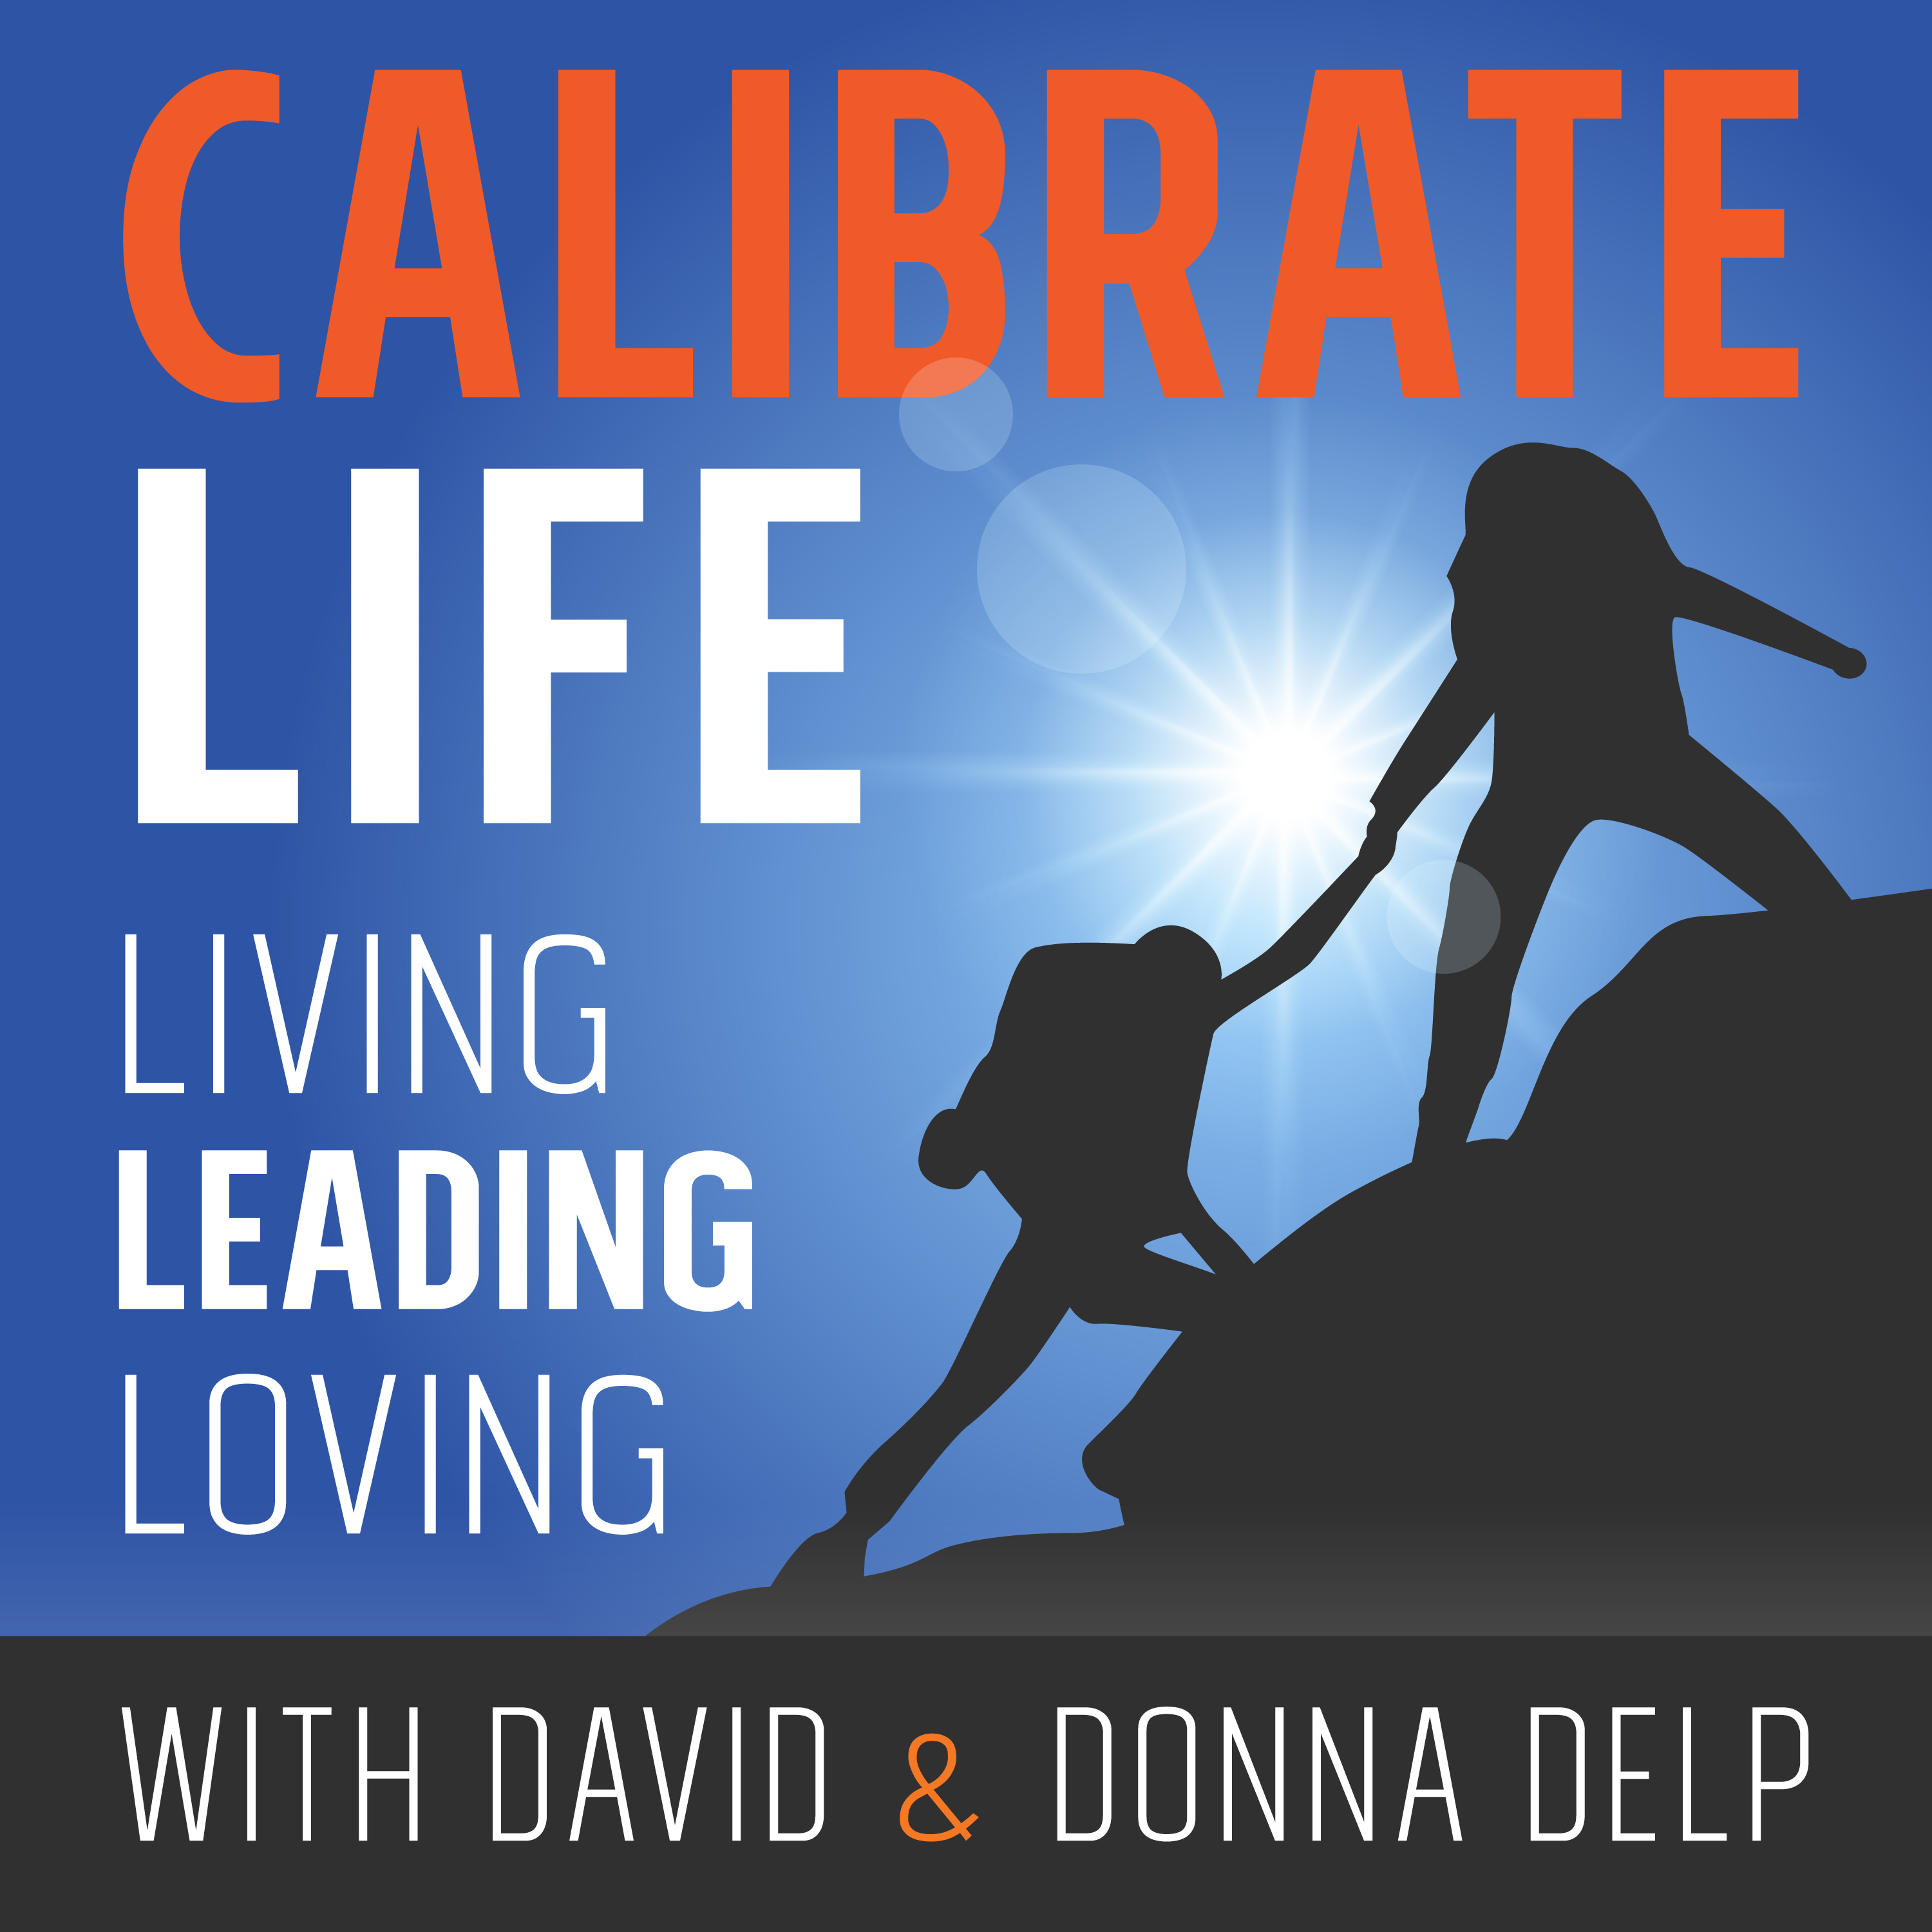 Calibrate Life & Spiritual Leadership